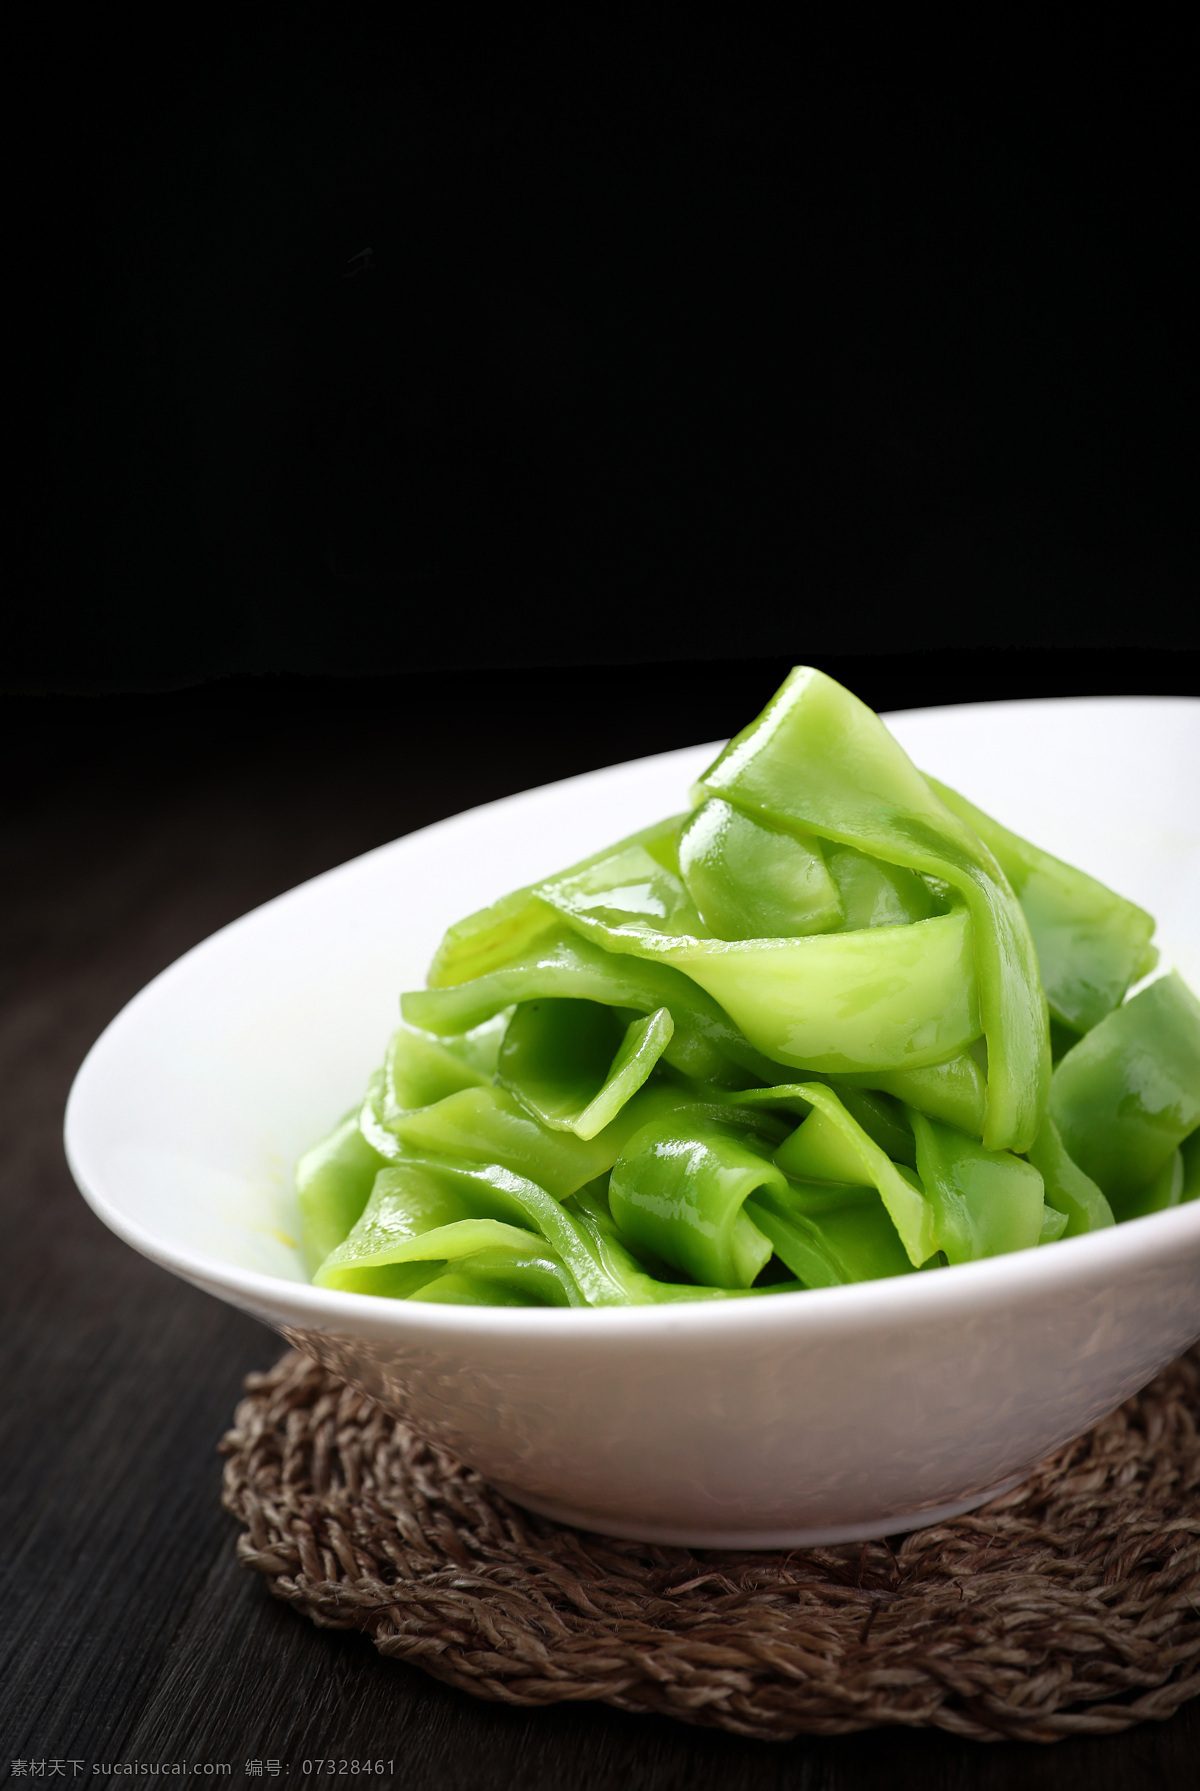 菜品素菜 绿色 有机 健康 菜品 素菜 餐饮美食 传统美食